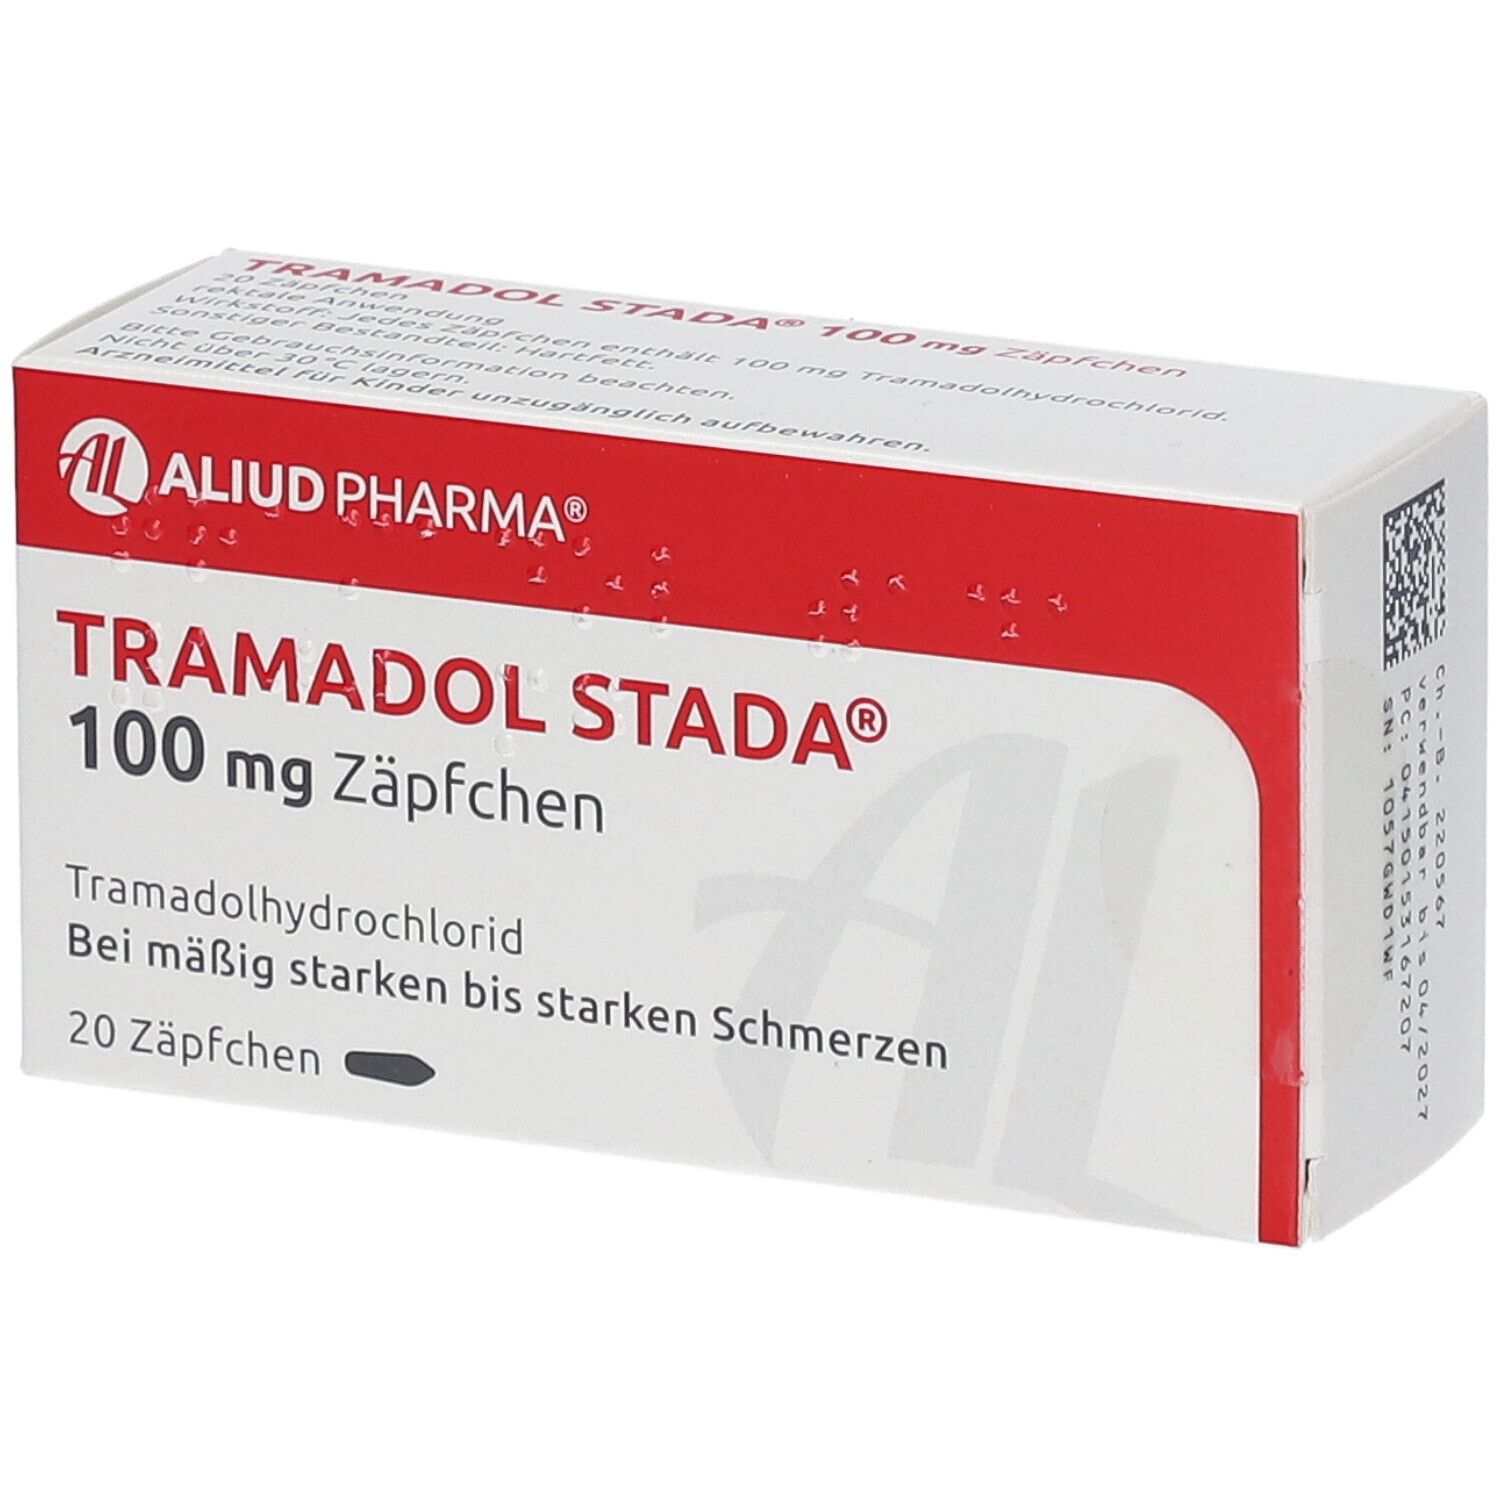 Tramadol STADA® 100 mg Zäpfchen